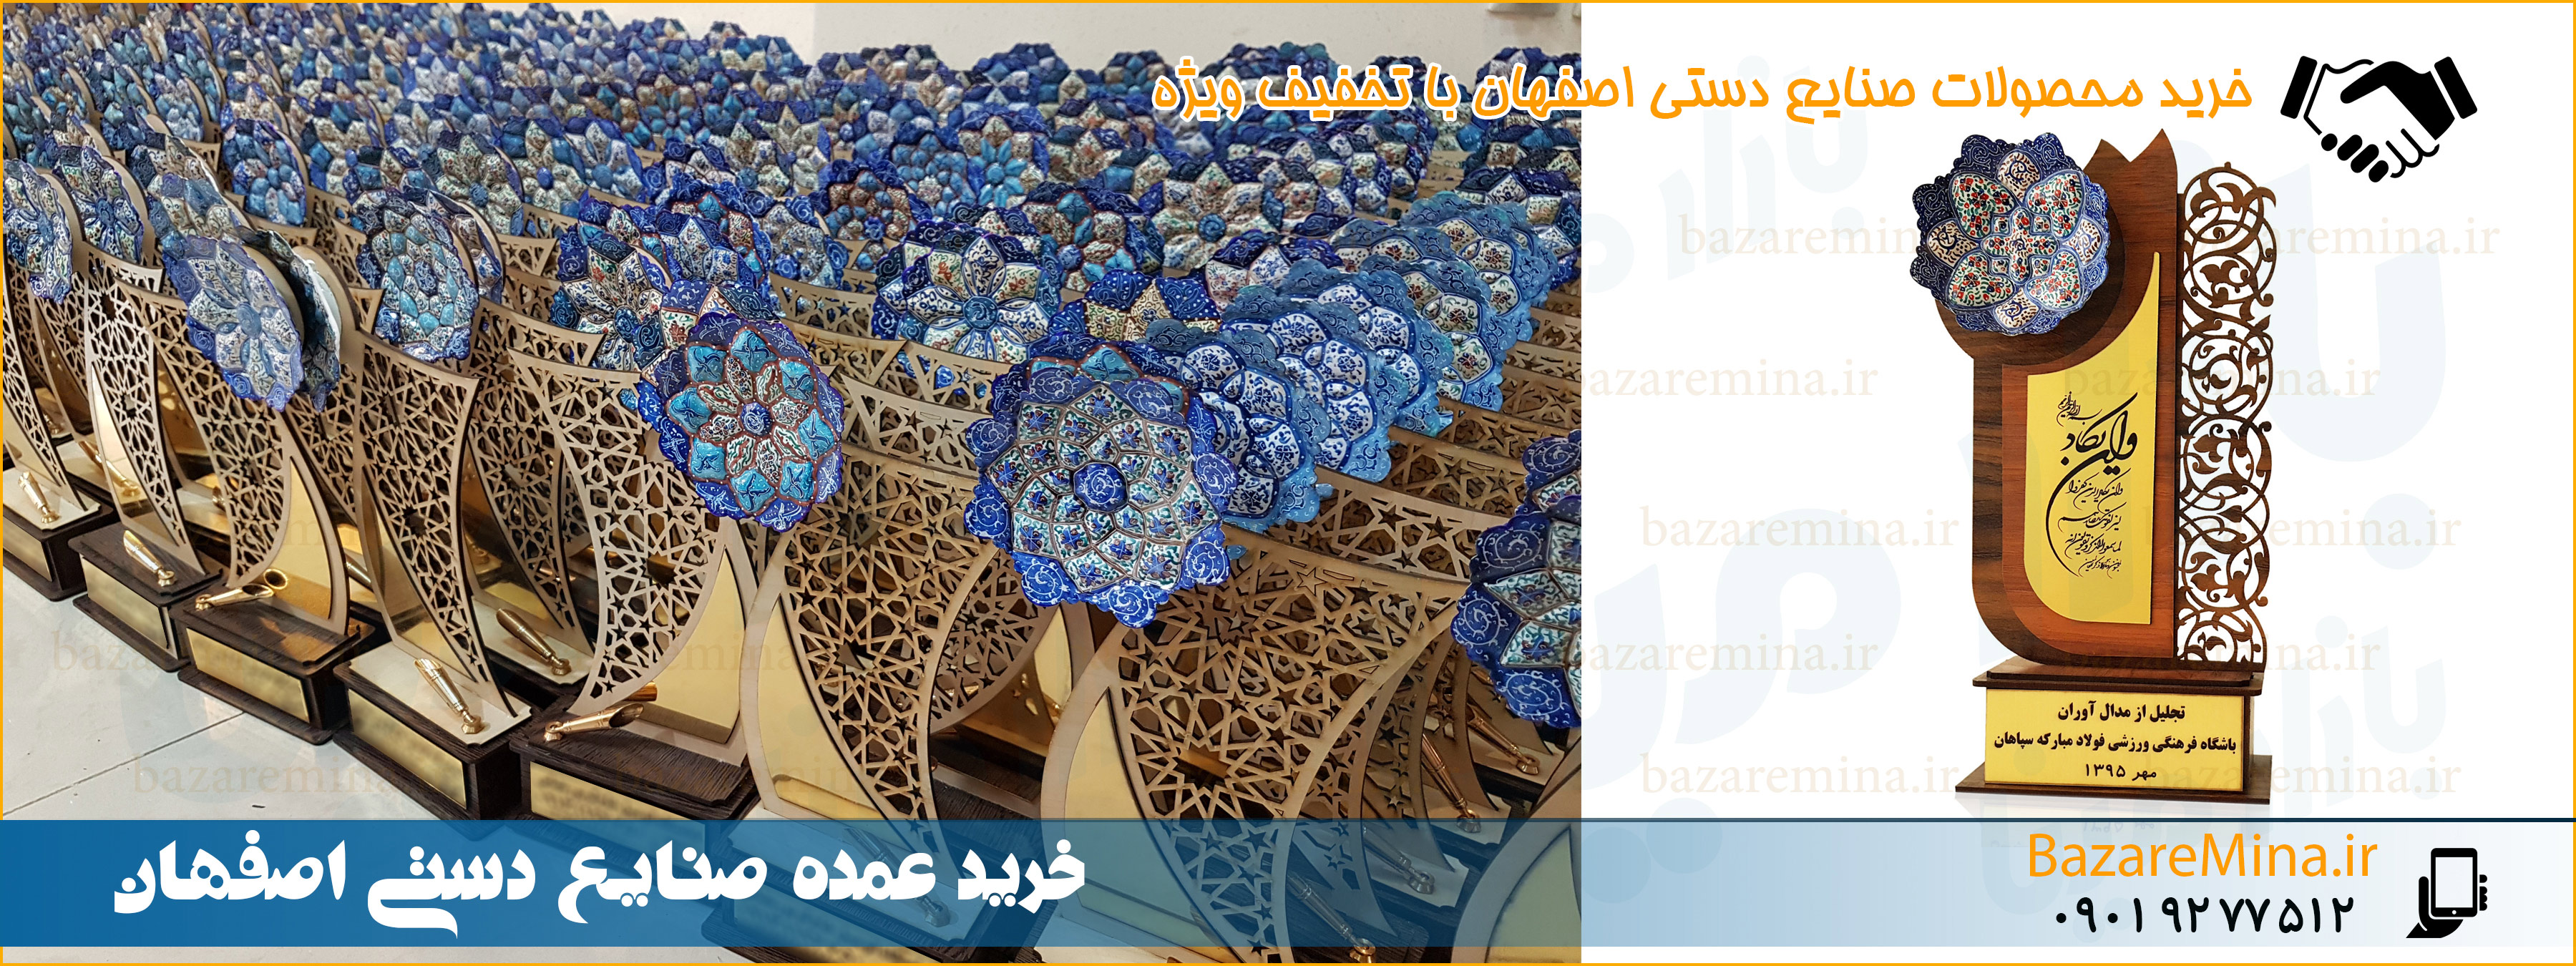 فروش عمده میناکاری در اصفهان